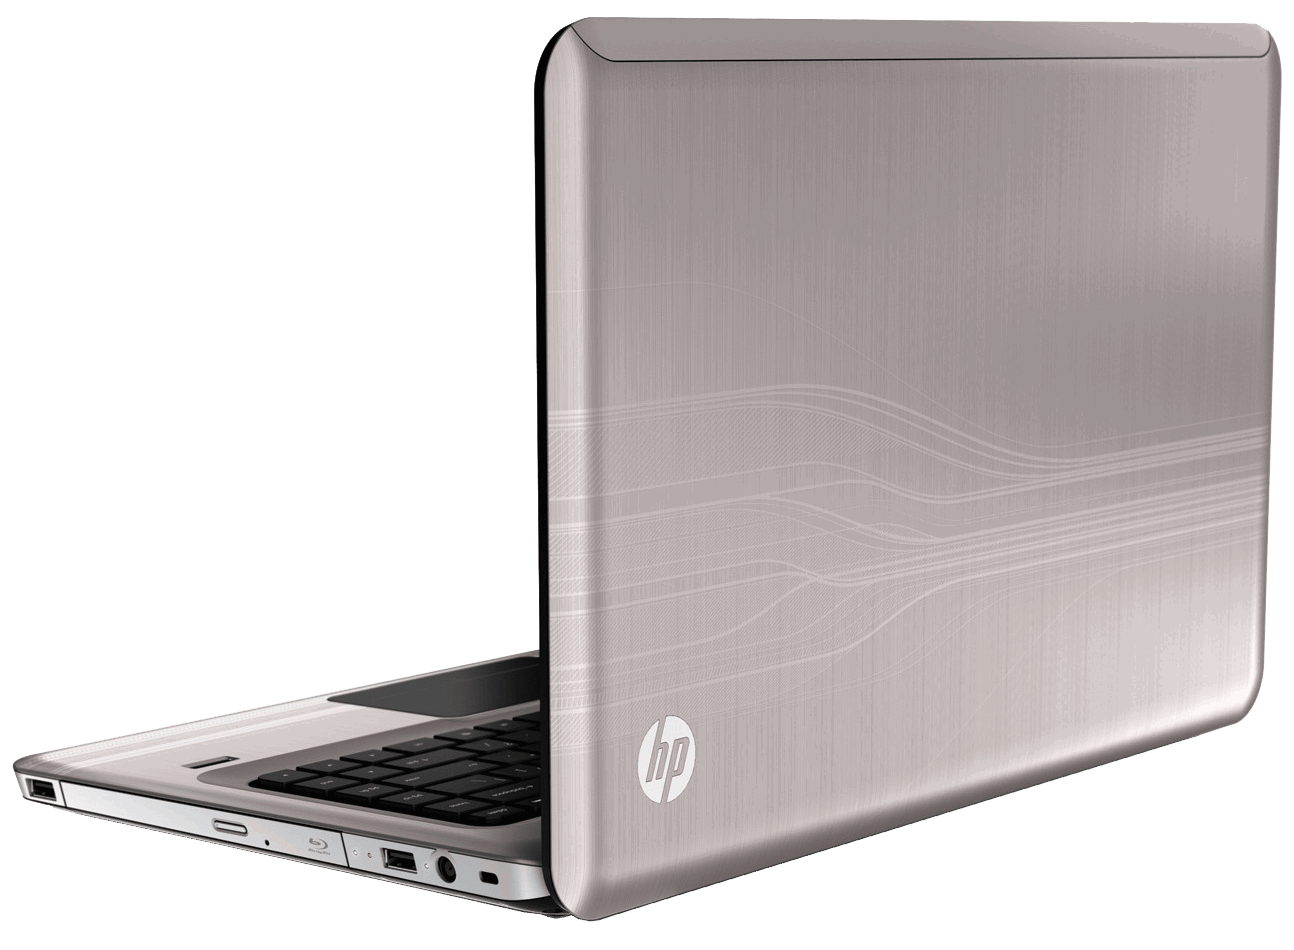 Laptop PNG - 8368